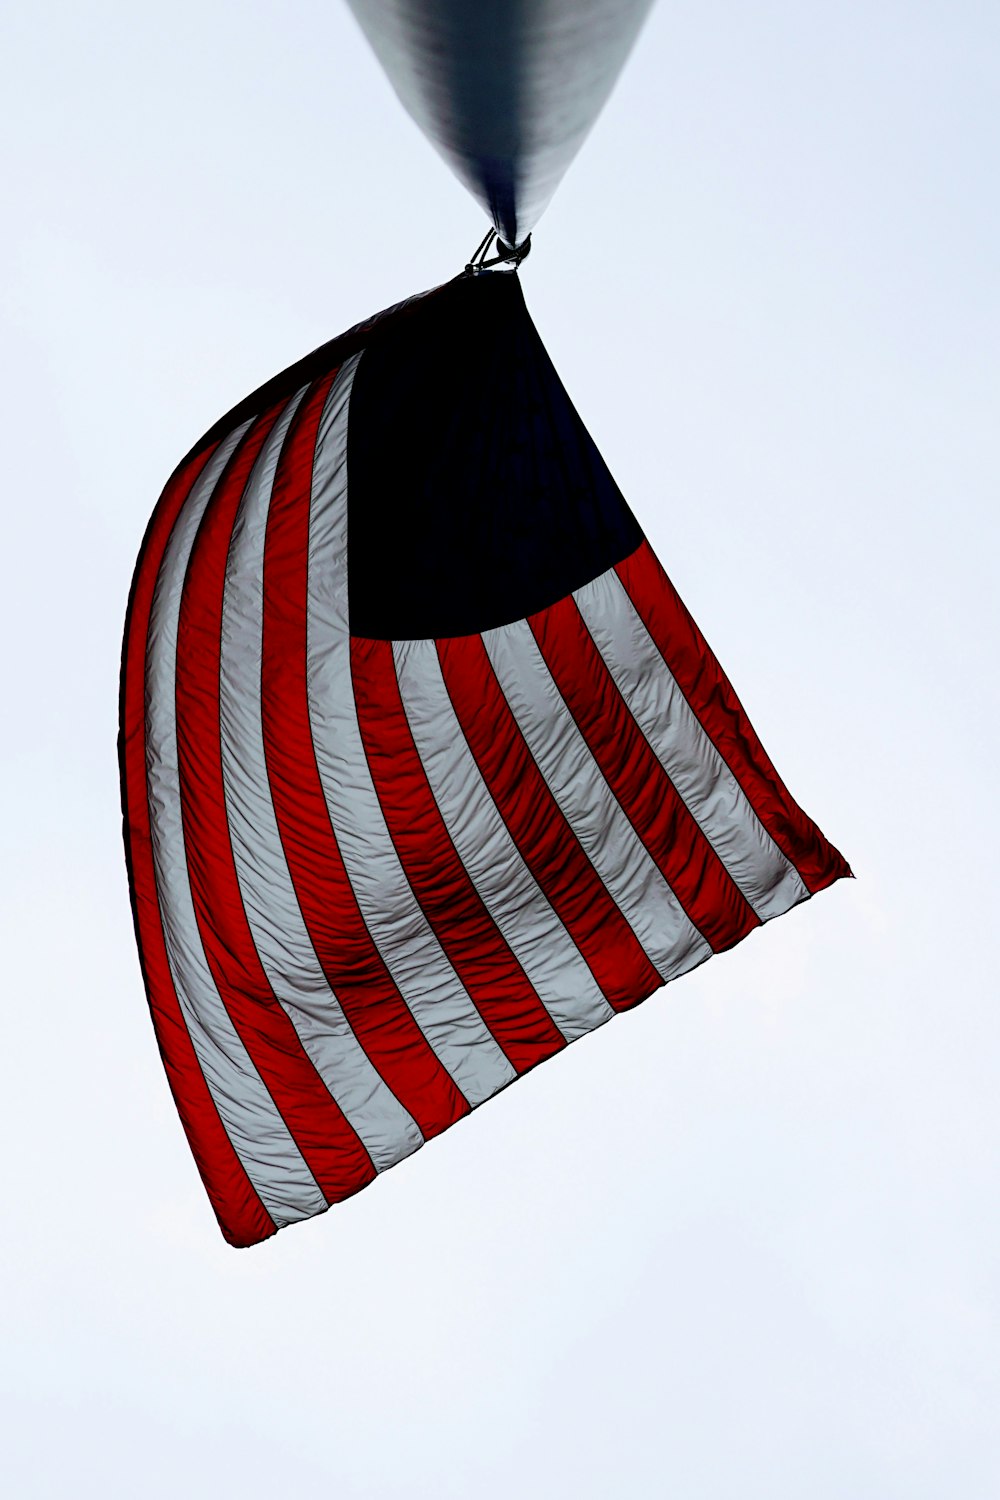 Bandera de los Estados Unidos de América en el poste de black metal durante el día